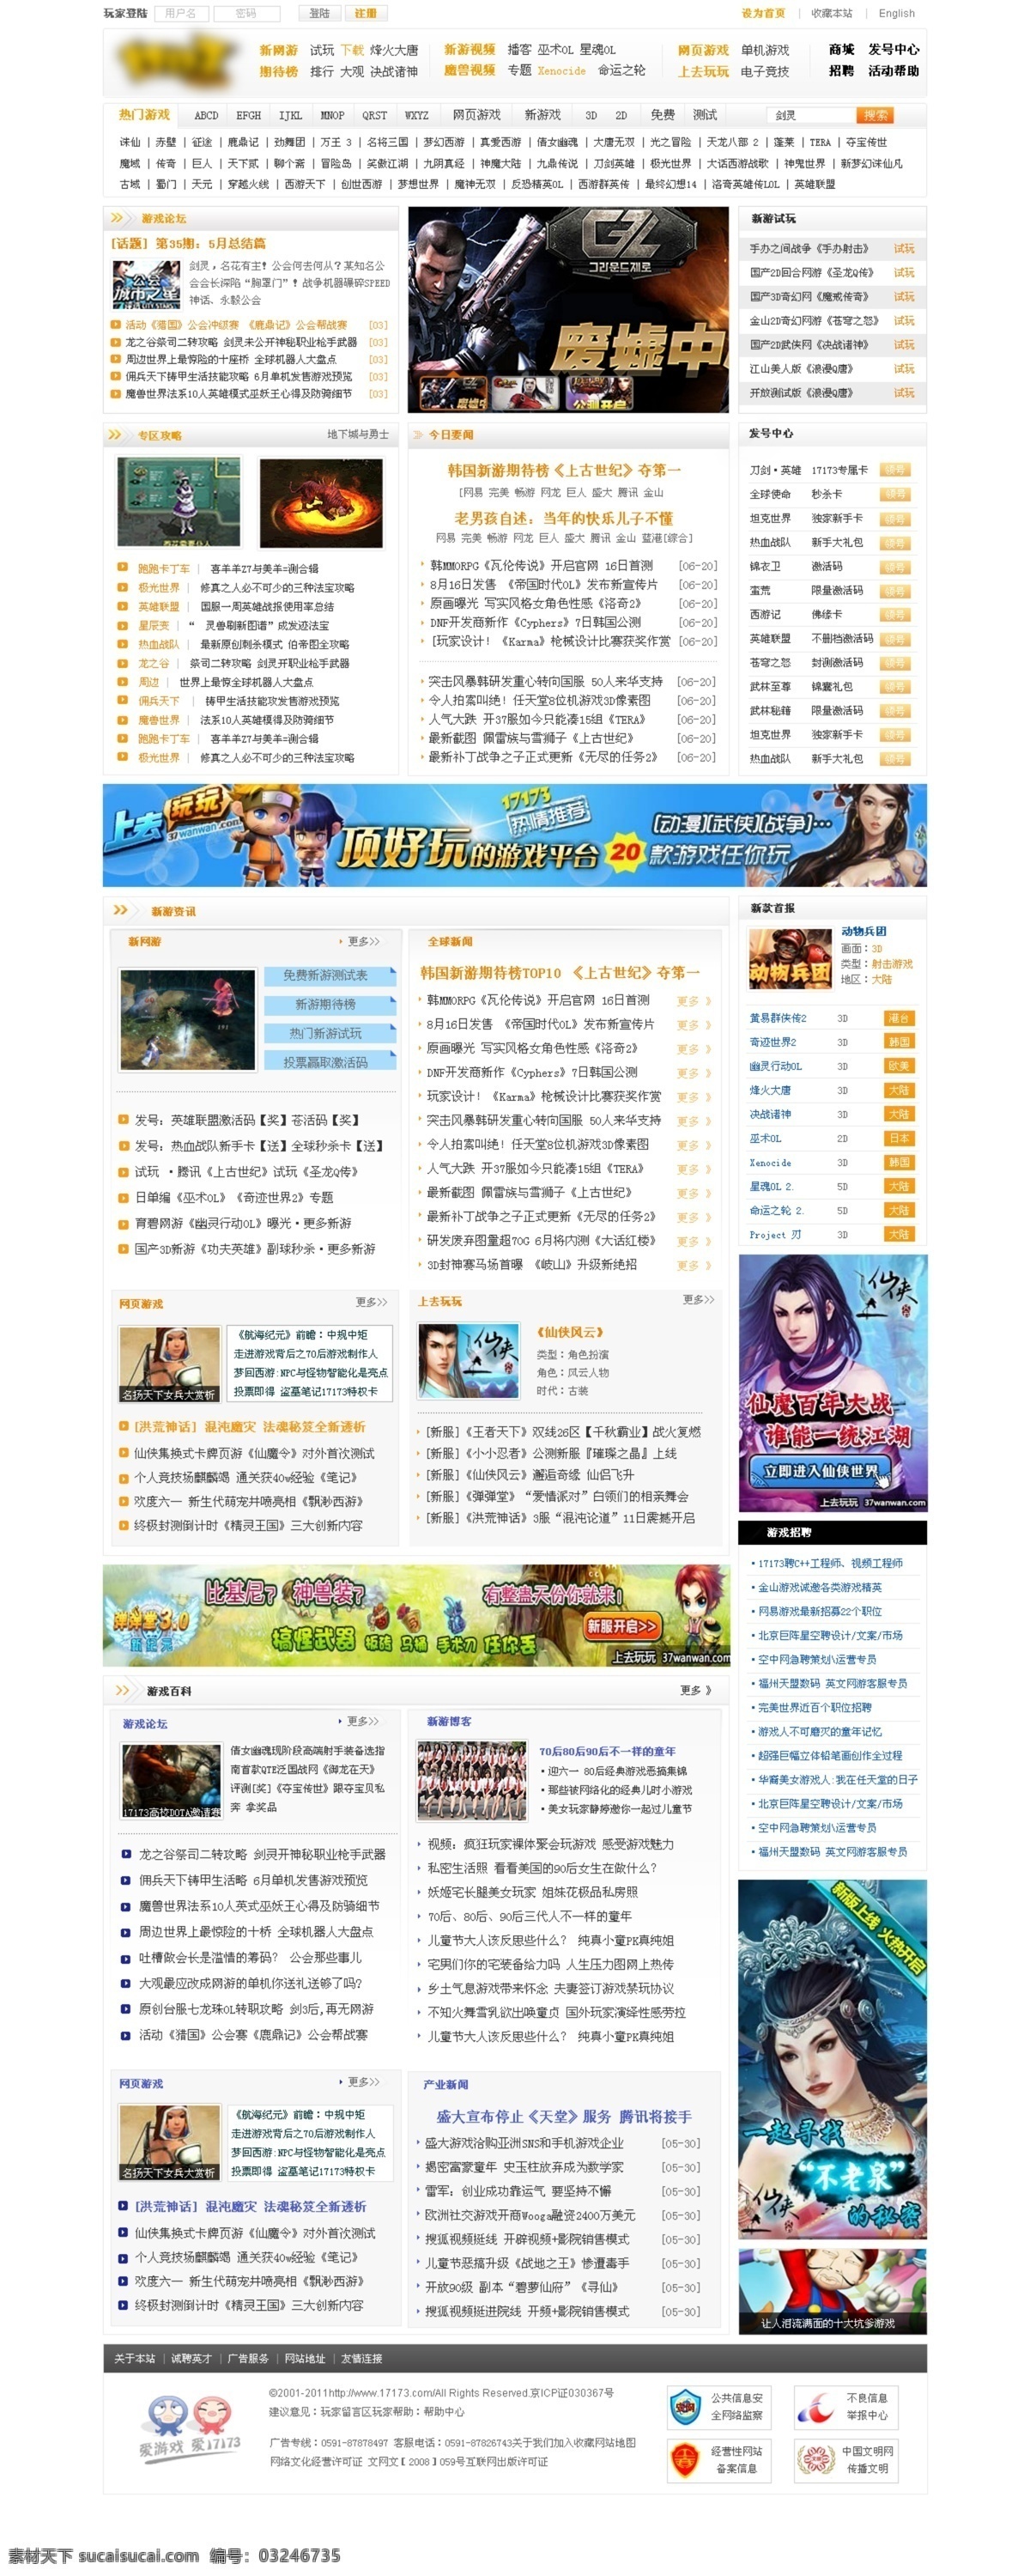 网页模板 游戏网页 游戏网站 源文件 中文模板 游戏网 模板下载 中文网页 网页素材